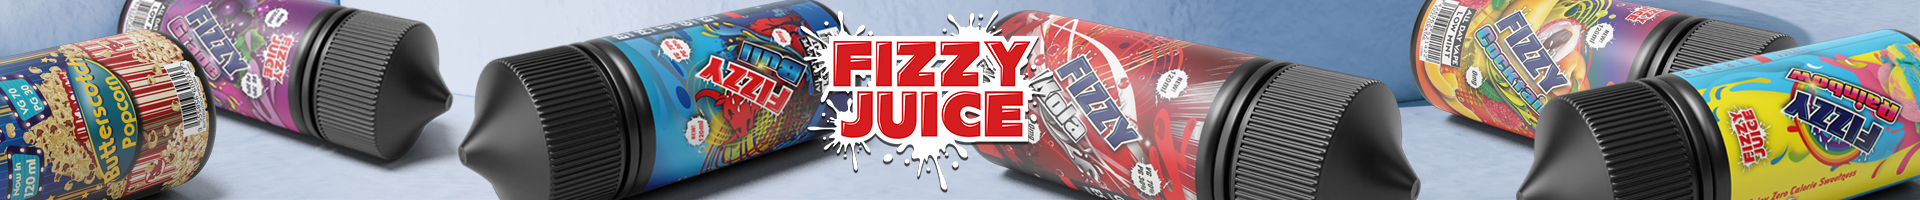 Distribuidor oficial de e-líquidos Fizzy Juice.